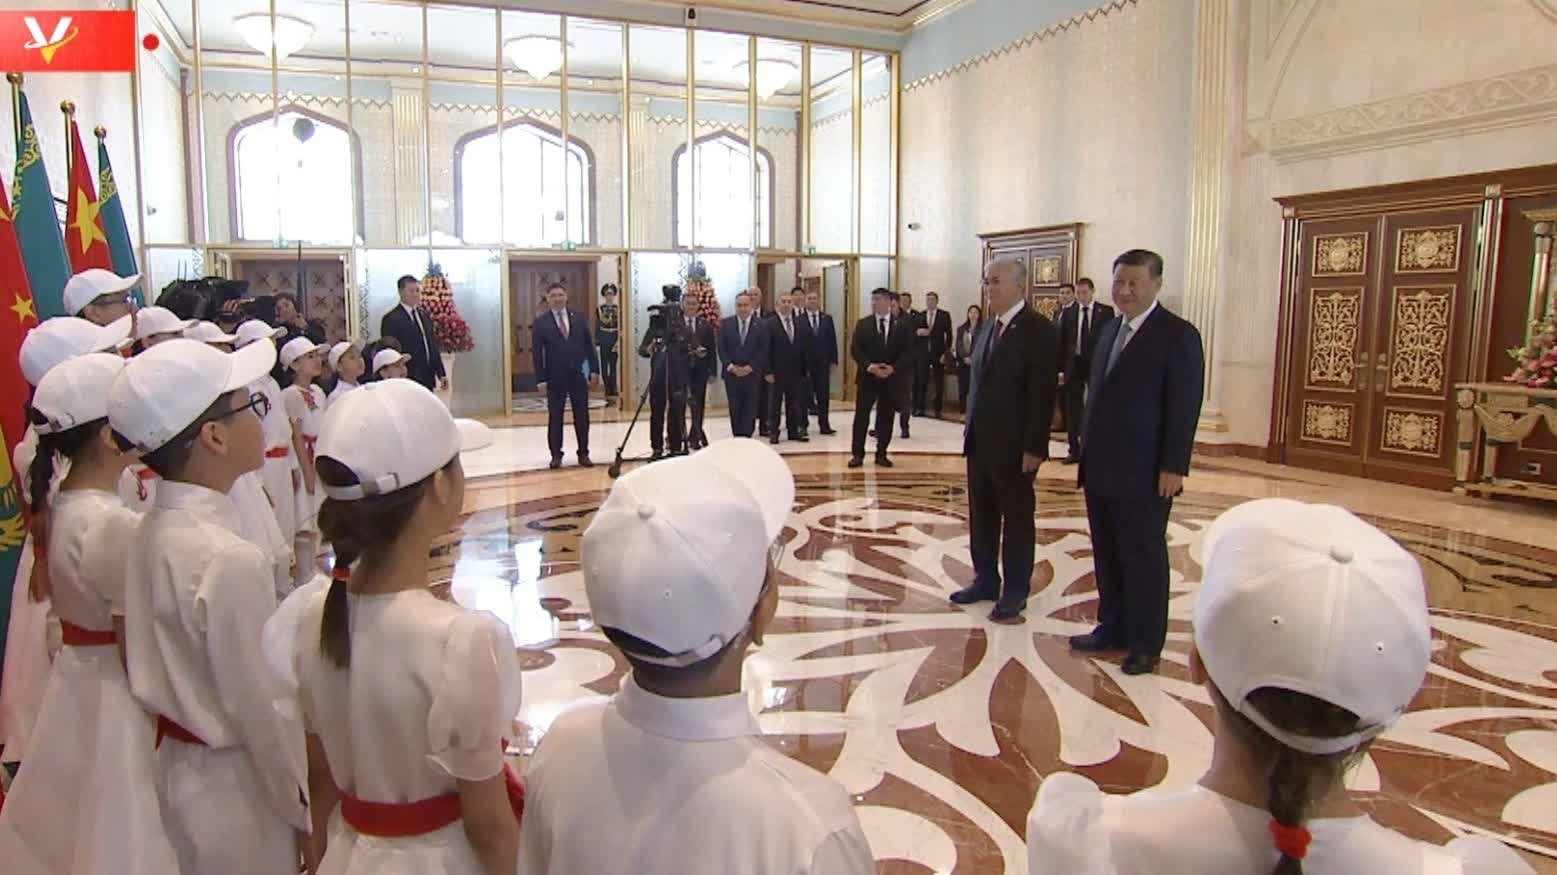 （有片）習近平在托卡耶夫陪同下欣賞哈薩克斯坦少年兒童演唱《歌唱祖國》